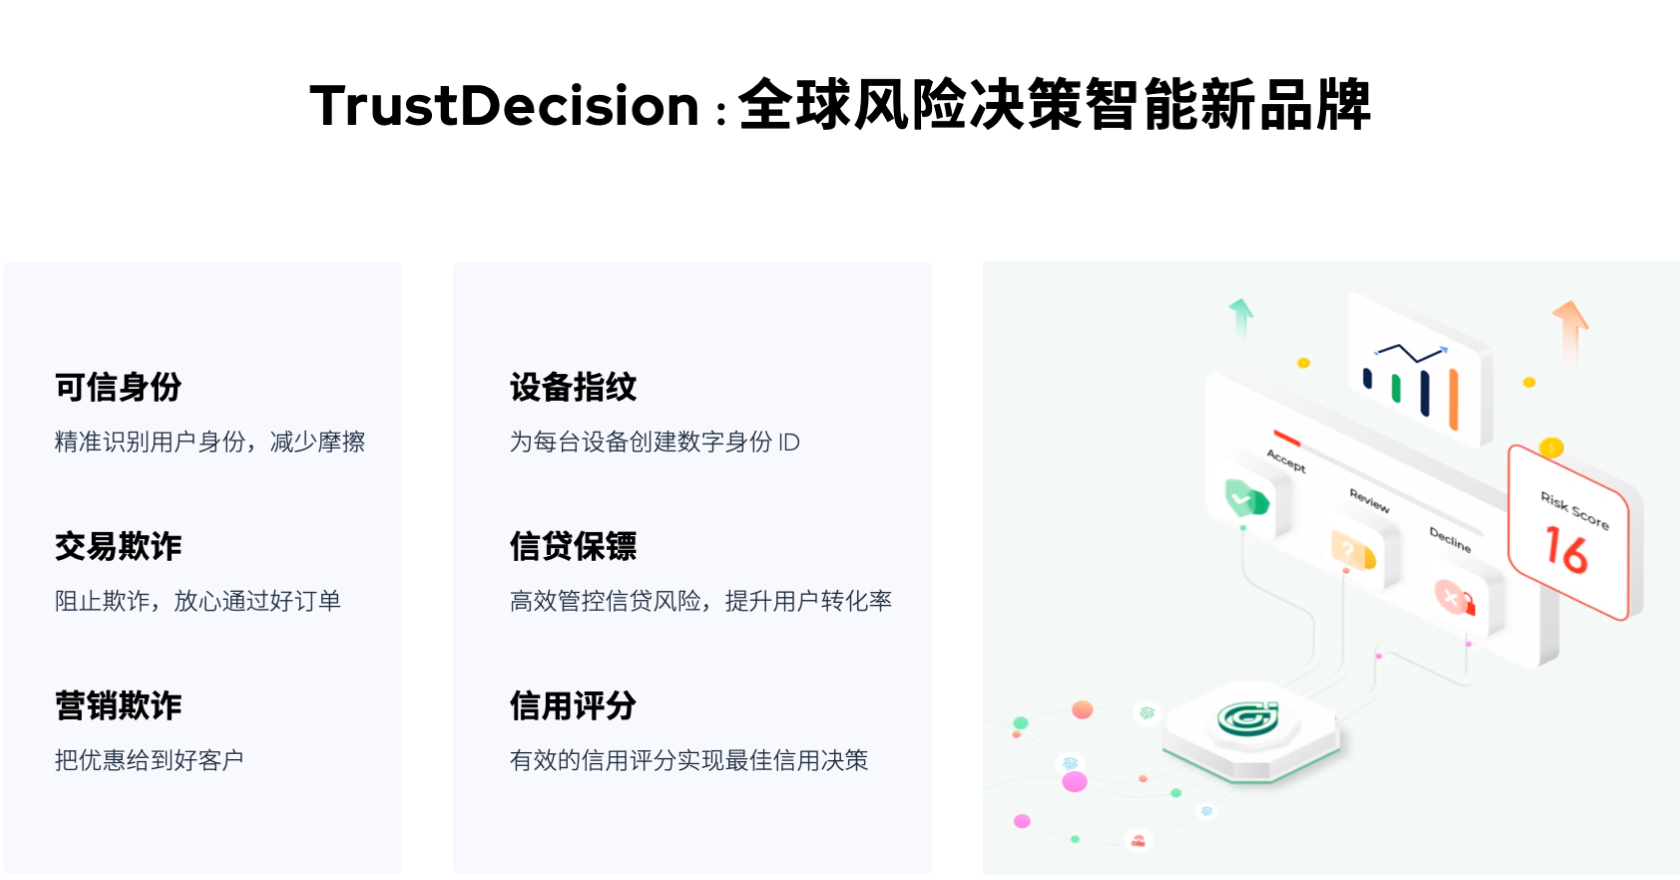 TustDecision-全球风险决策智能新品牌.png